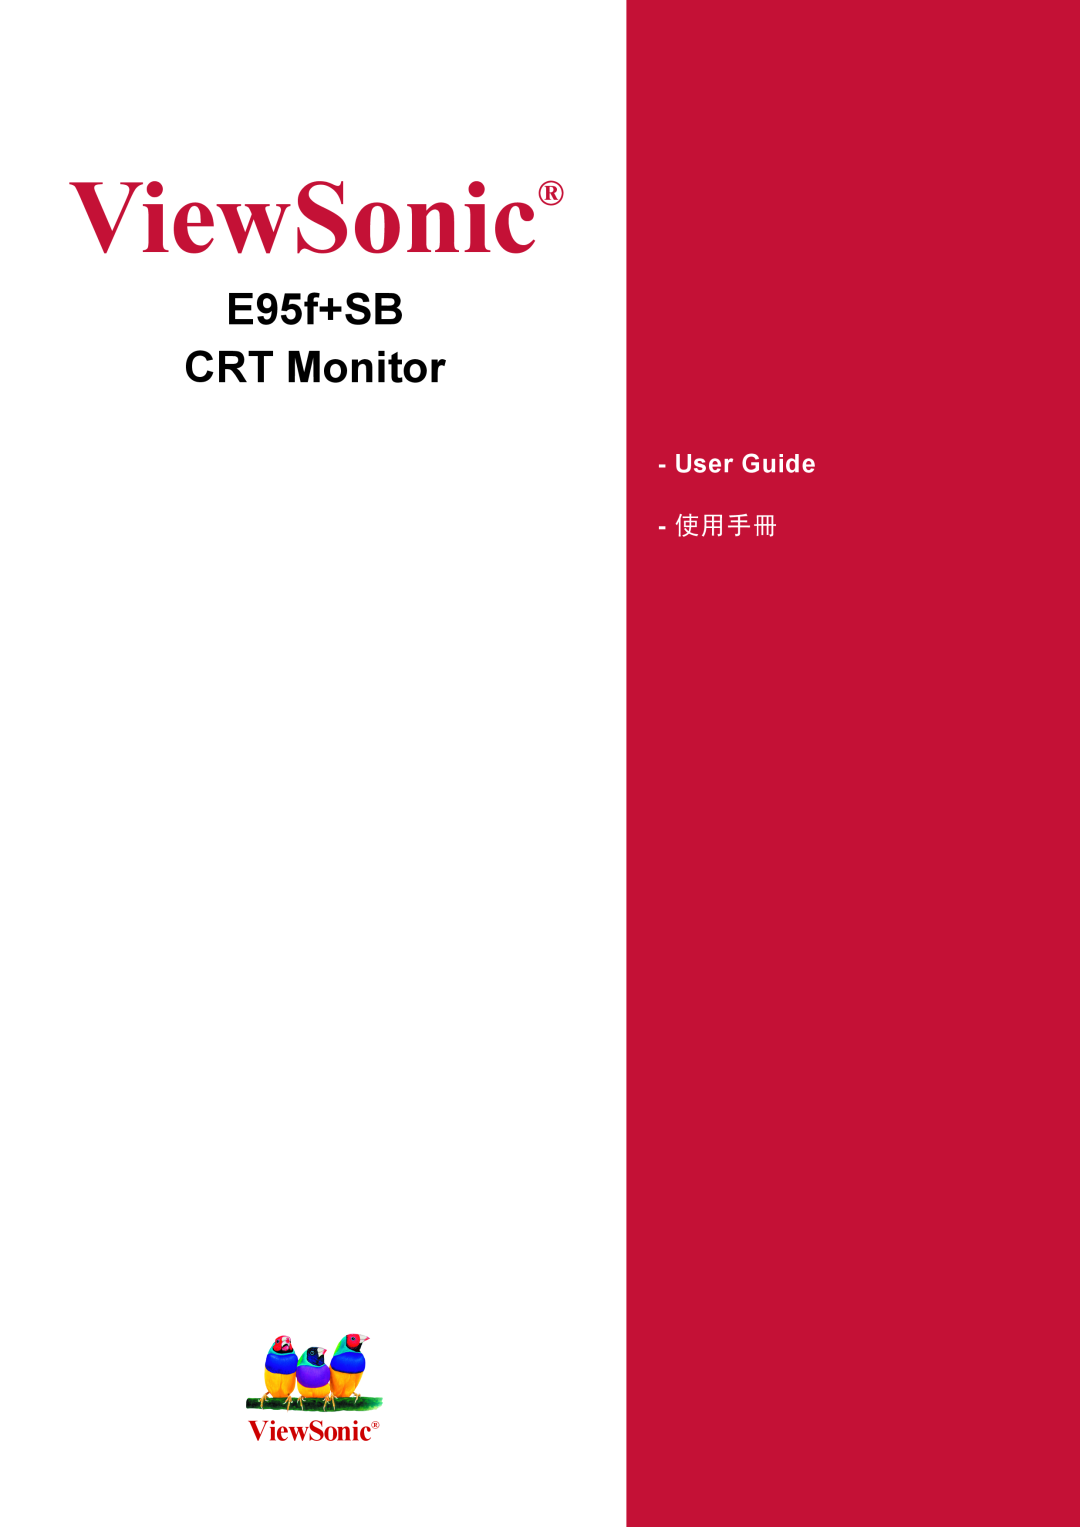 ViewSonic manual ViewSonic, E95f+SB CRT Monitor, User Guide, 使用手冊 